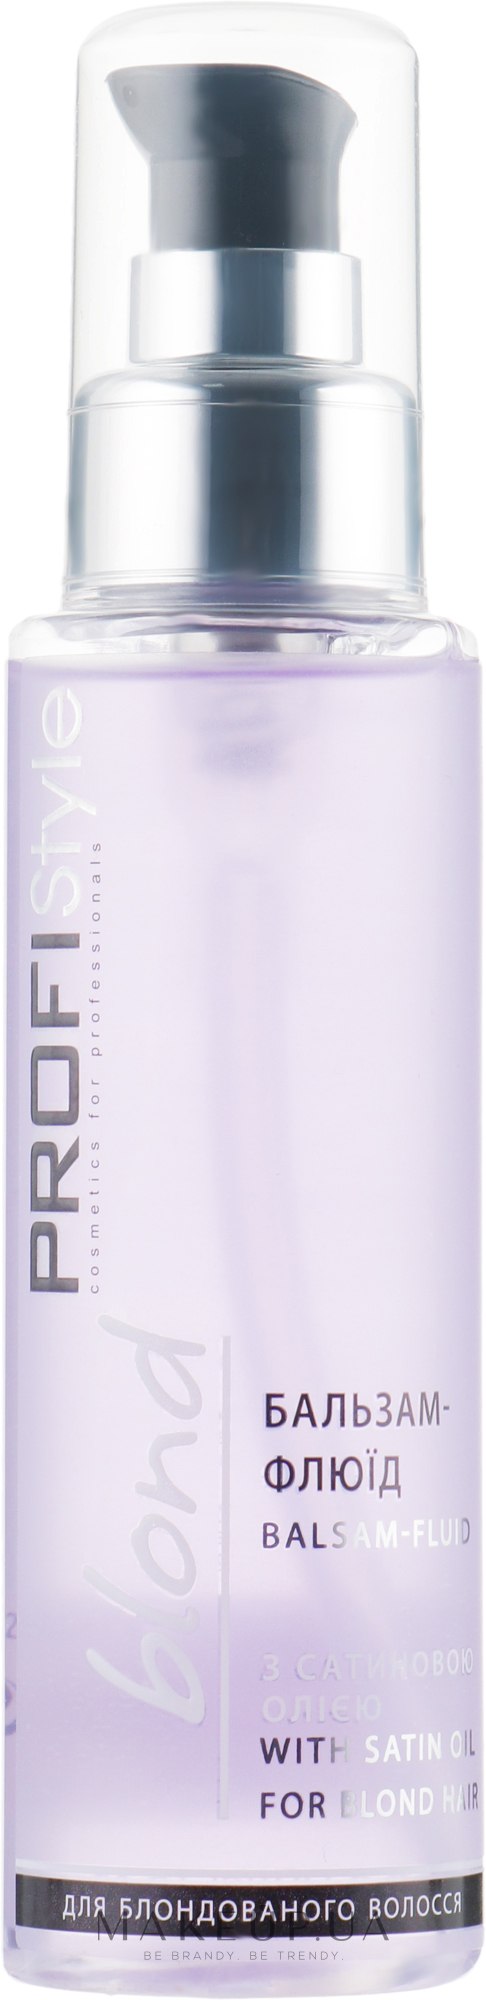 Бальзам-флюид для волос с сатиновым маслом - Profi Style Blond With Satin Oil Balsam-Fluid — фото 100ml